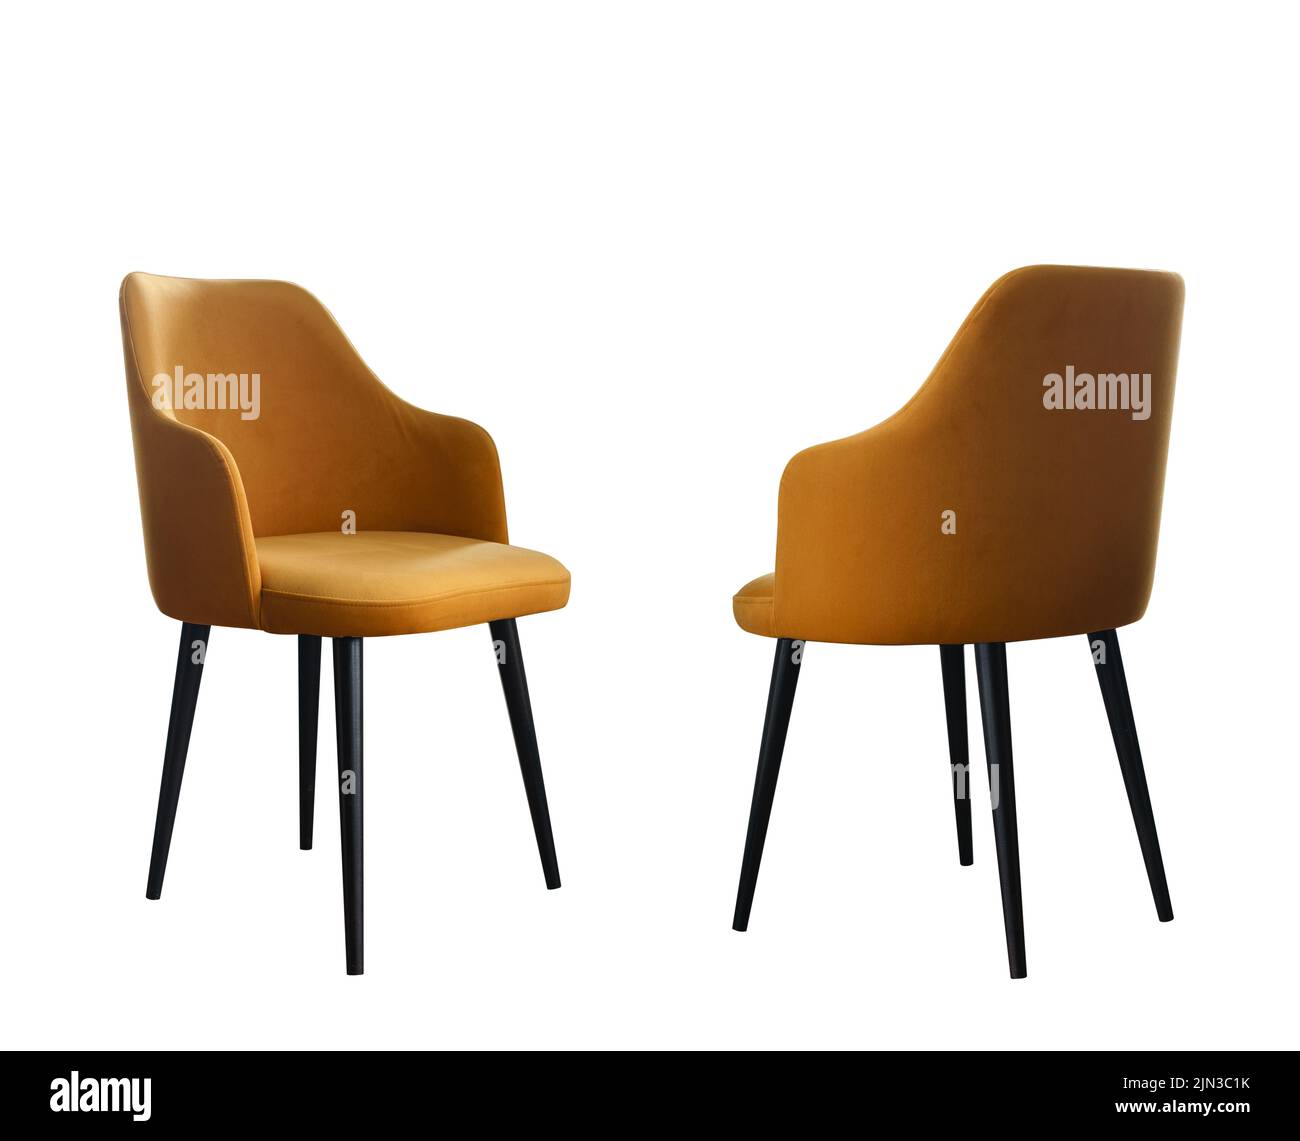 Vue avant et arrière de la chaise moderne jaune avec pattes noires isolées sur fond blanc avec espace pour copier Banque D'Images